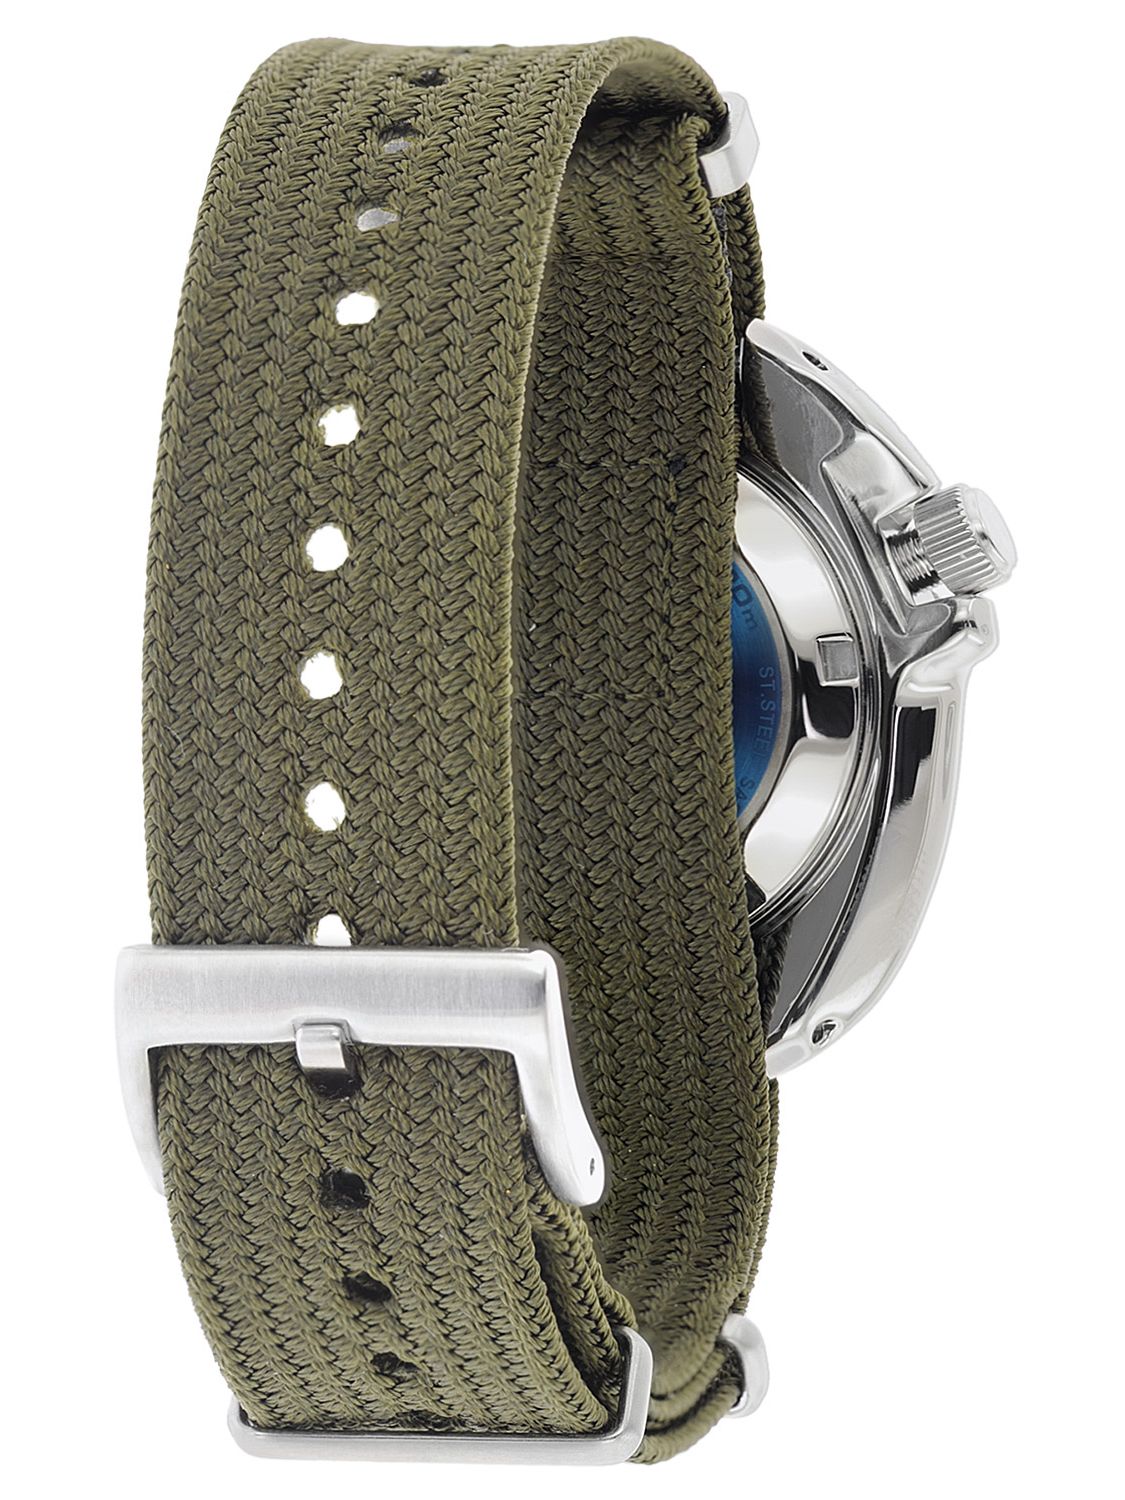 SEIKO SPB237J1 Prospex Automatic Men's Wristwatch